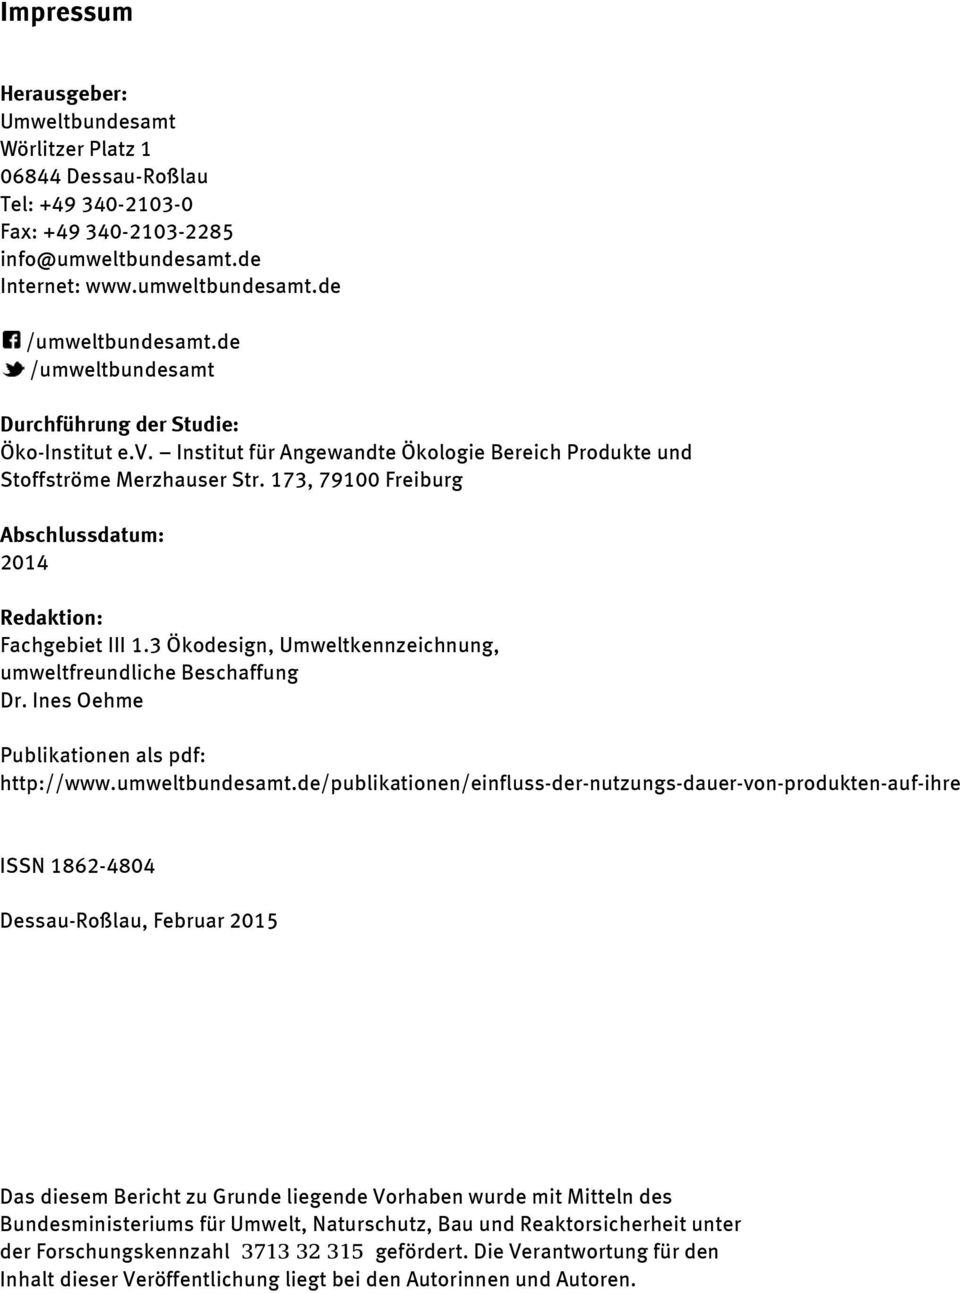 173, 79100 Freiburg Abschlussdatum: 2014 Redaktion: Fachgebiet III 1.3 Ökodesign, Umweltkennzeichnung, umweltfreundliche Beschaffung Dr. Ines Oehme Publikationen als pdf: http://www.umweltbundesamt.